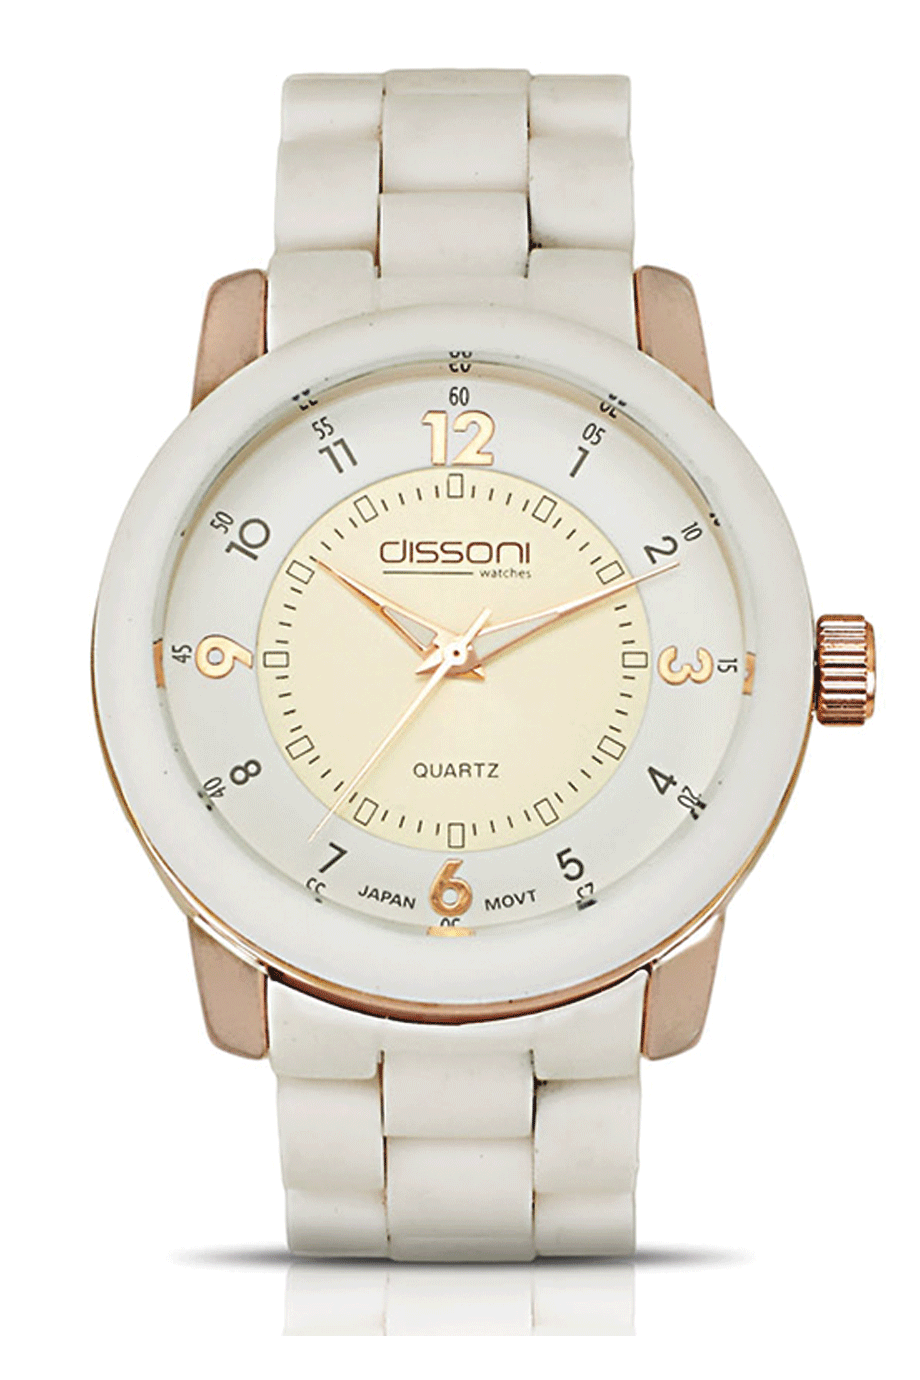 Dissoni W87519-2